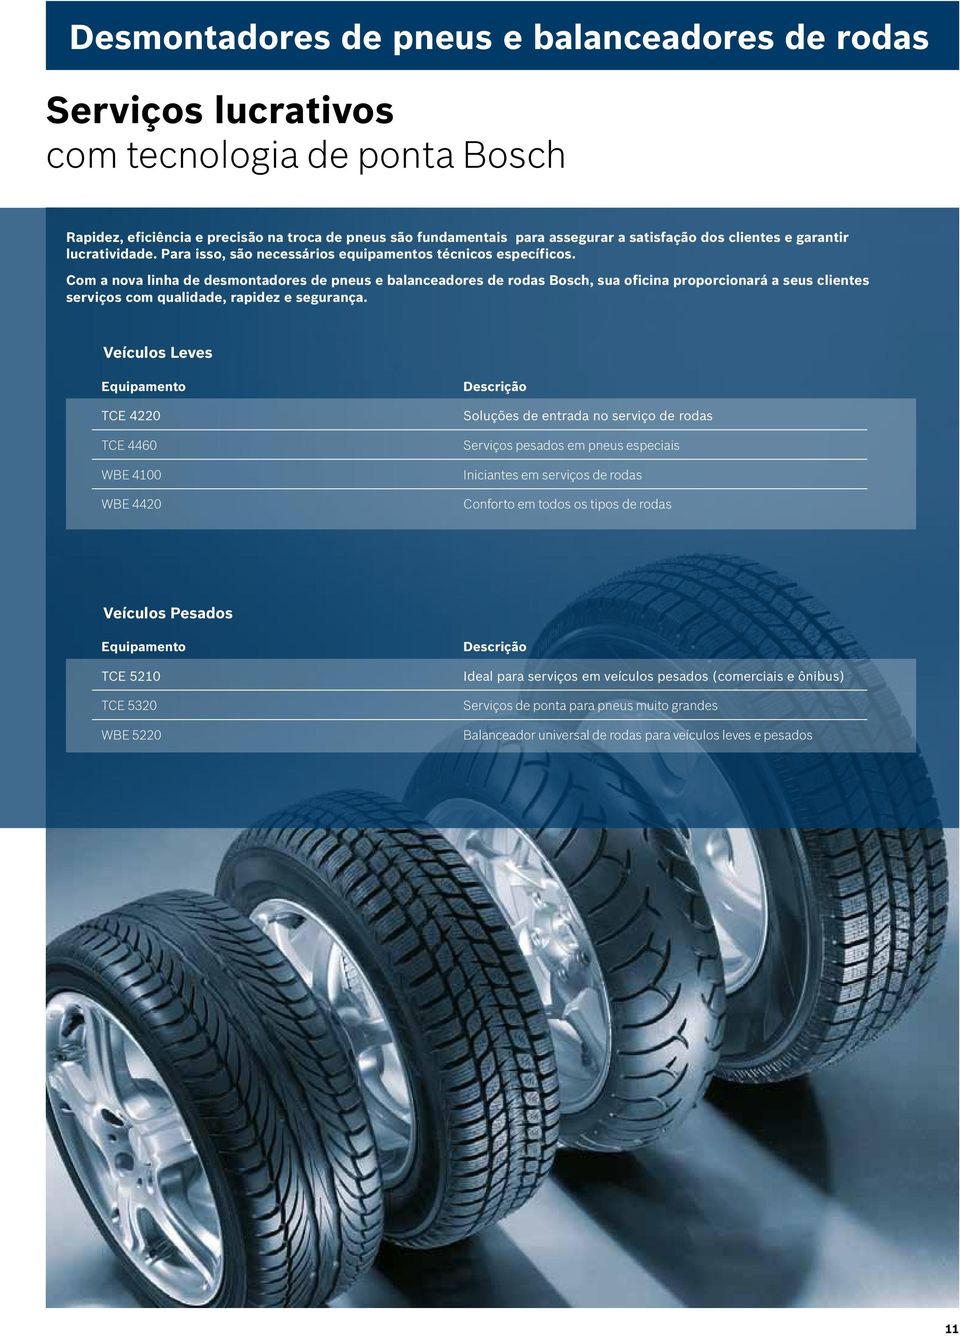 Com a nova linha de desmontadores de pneus e balanceadores de rodas Bosch, sua oficina proporcionará a seus clientes serviços com qualidade, rapidez e segurança.